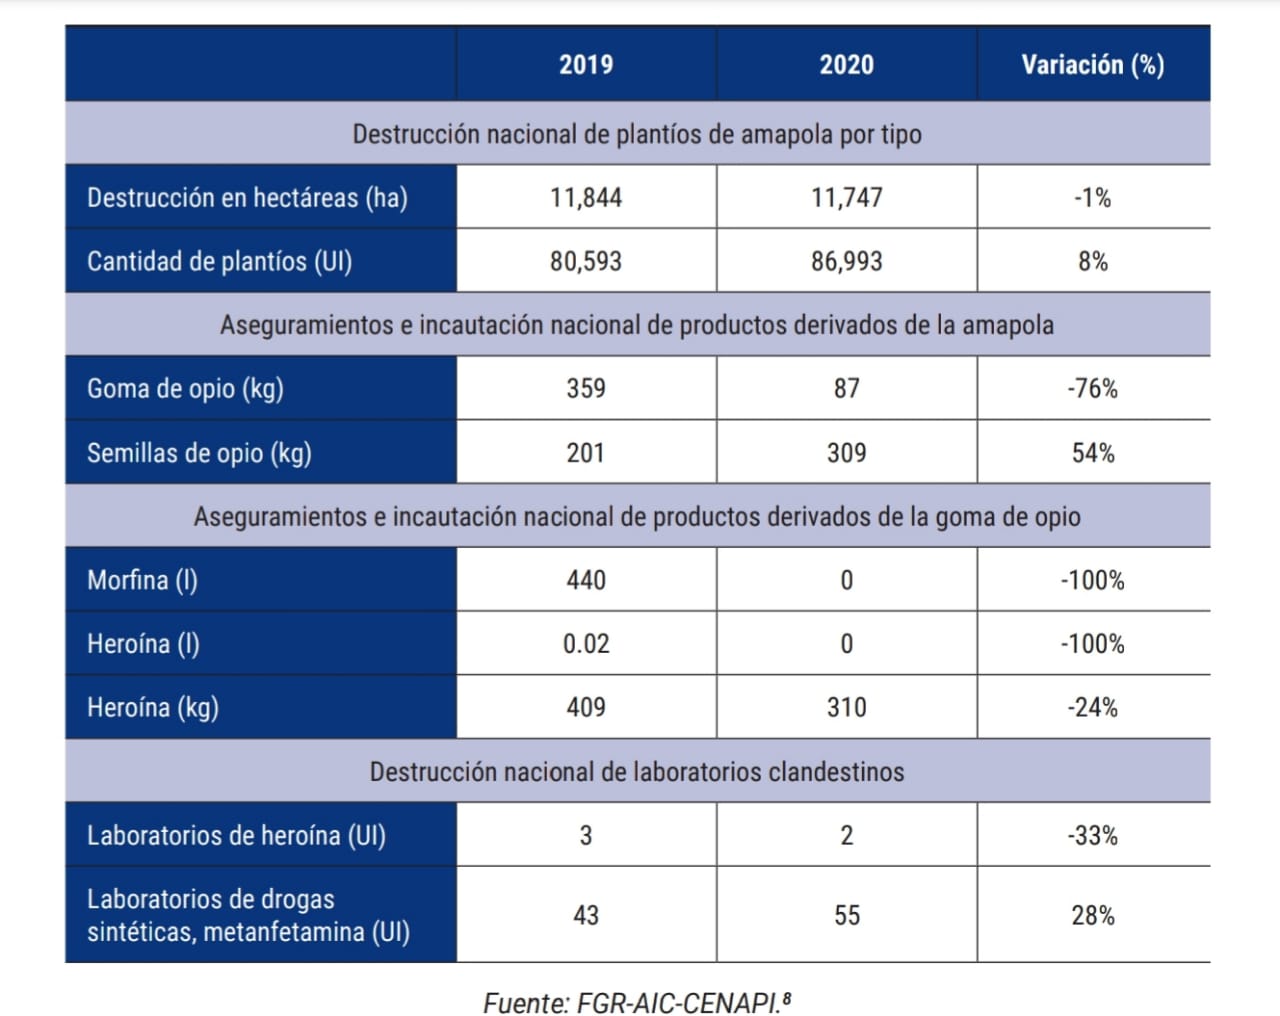 Destrucción, aseguramiento e incautación de amapola en 2019 y 2020